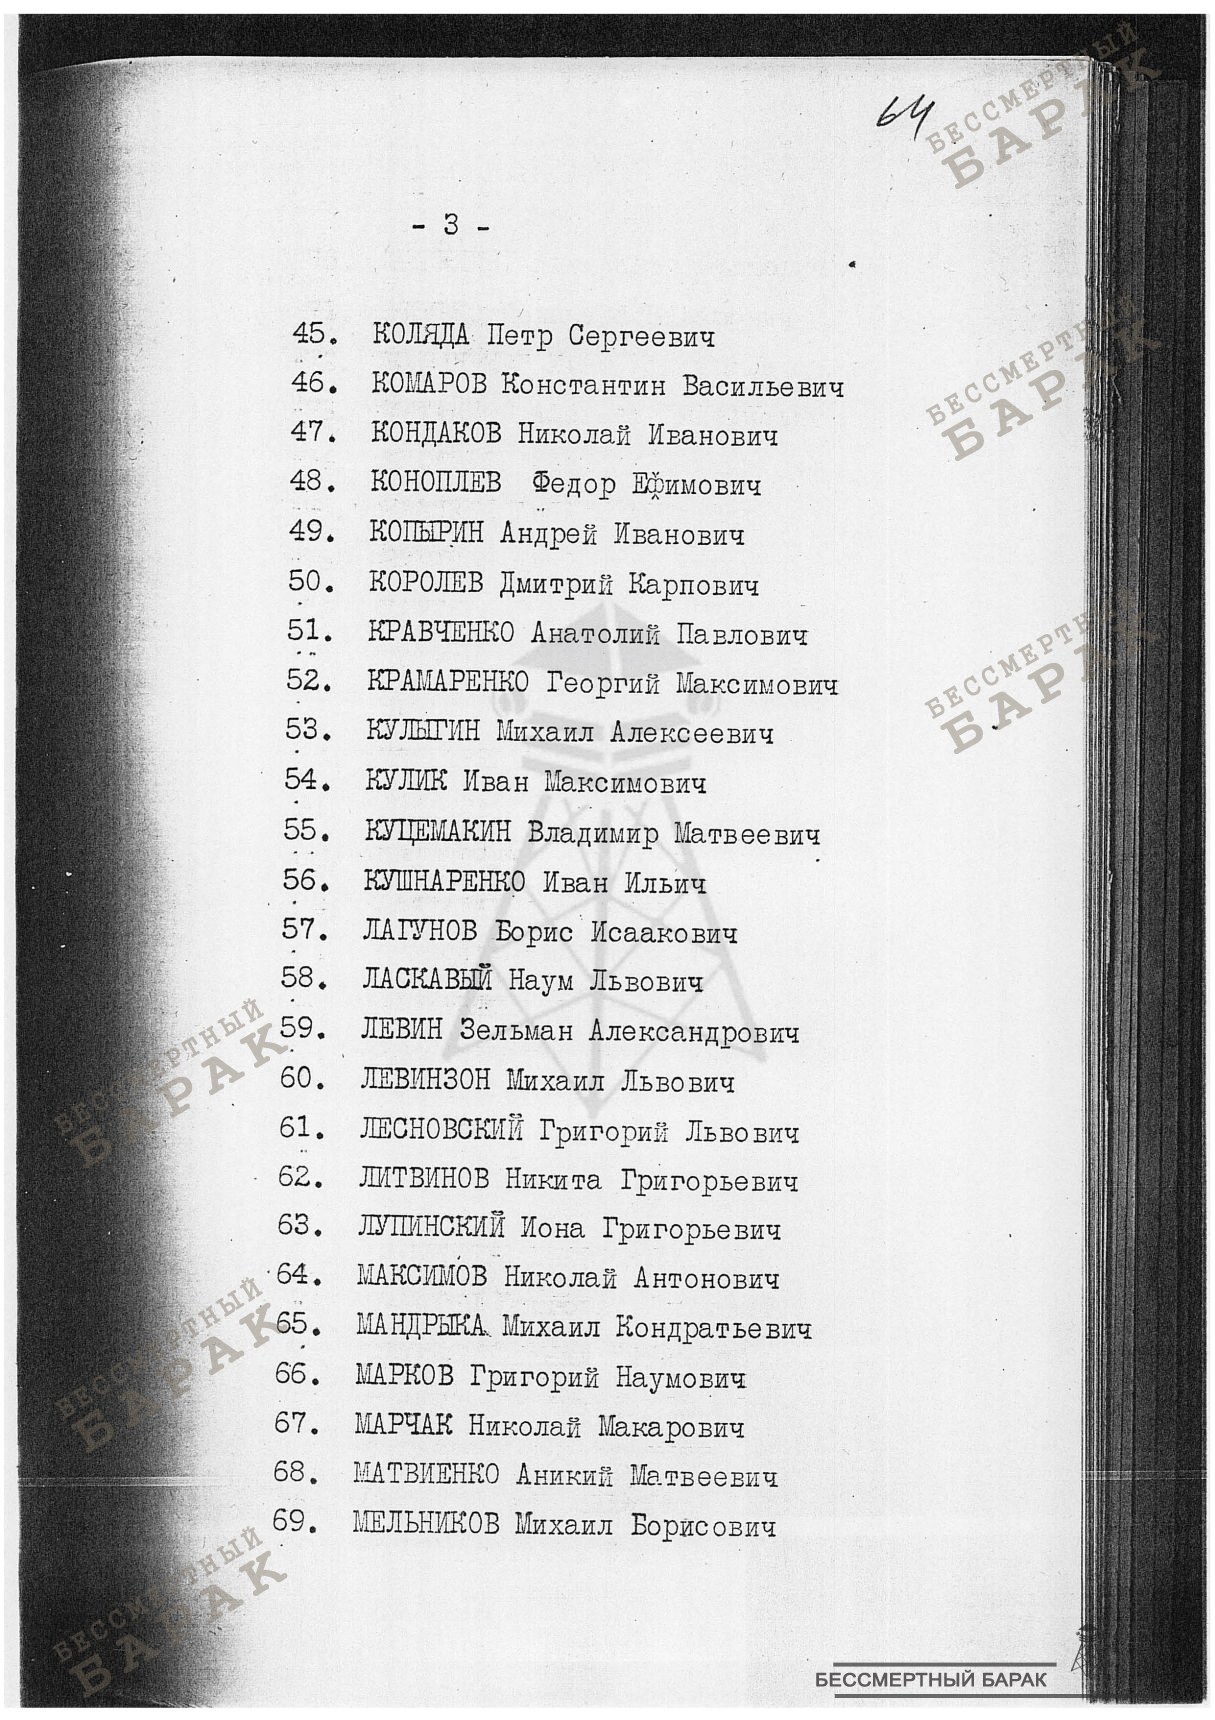 Сталинские списки: список лиц от 12 сентября 1938 года. Украинская ССР